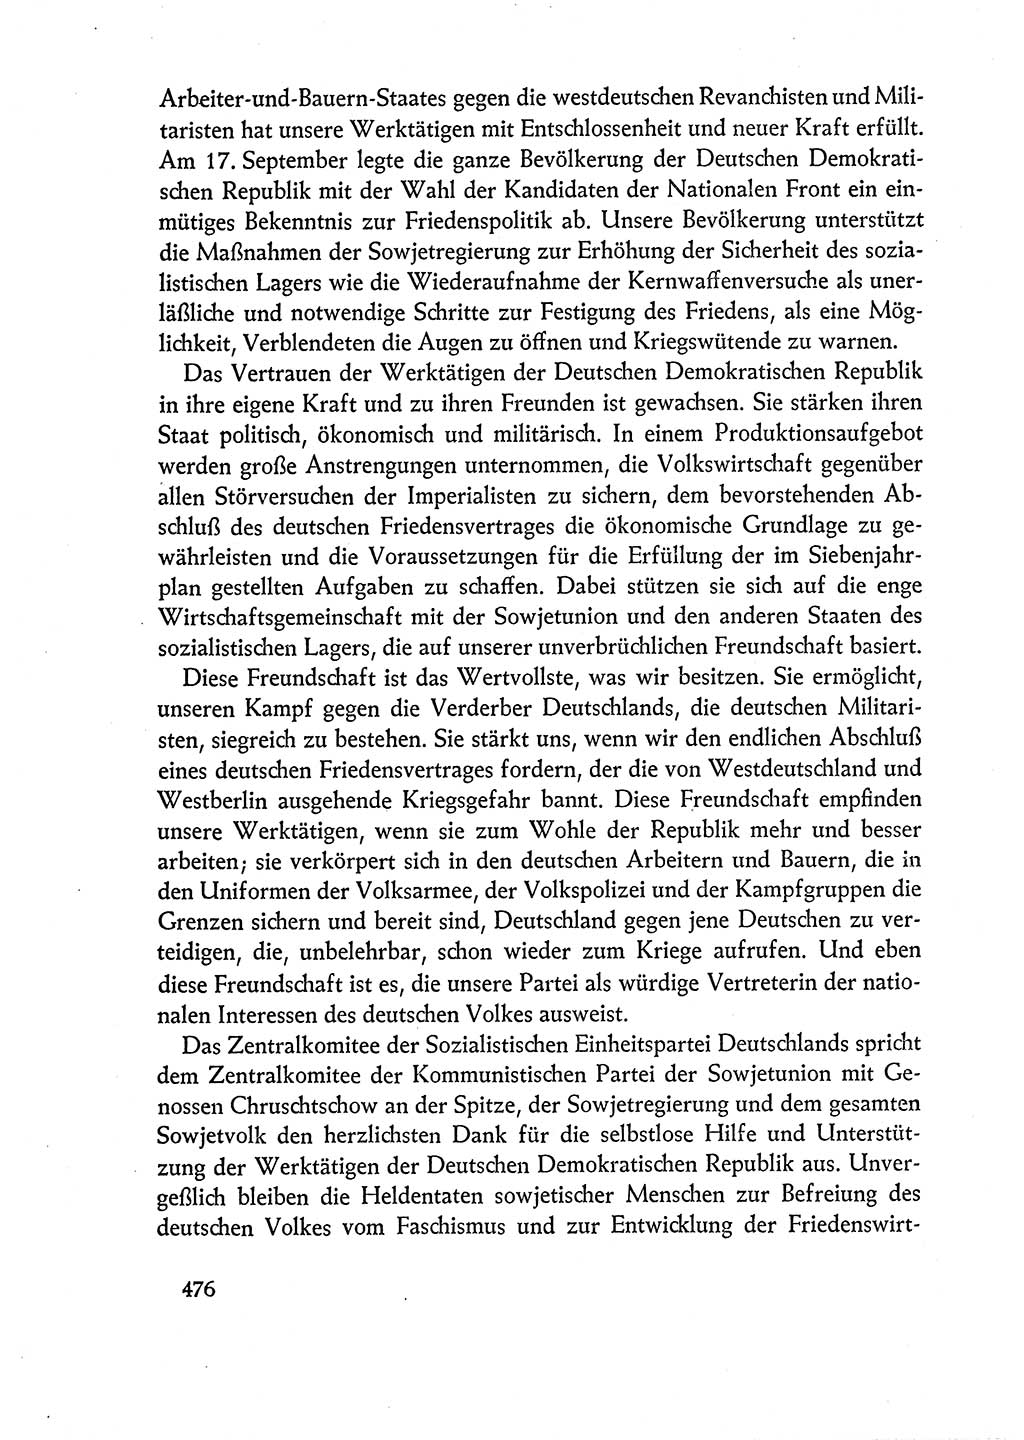 Dokumente der Sozialistischen Einheitspartei Deutschlands (SED) [Deutsche Demokratische Republik (DDR)] 1960-1961, Seite 476 (Dok. SED DDR 1960-1961, S. 476)